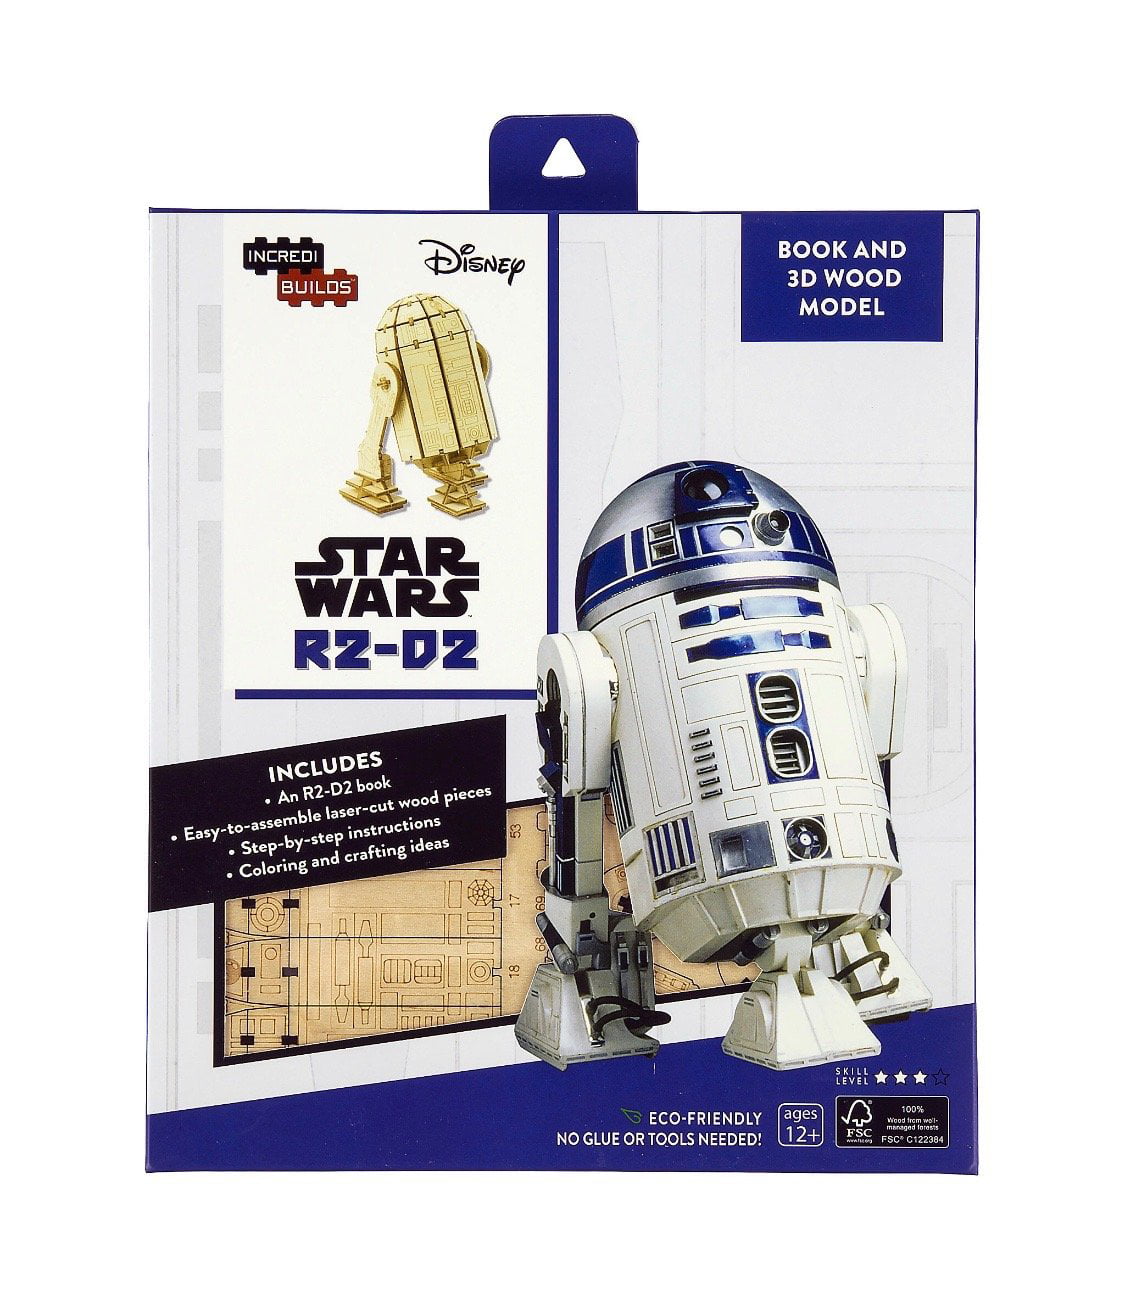 Artoo Detoo Droid Laser Cut Wooden 3D Model/Puzzle Kit